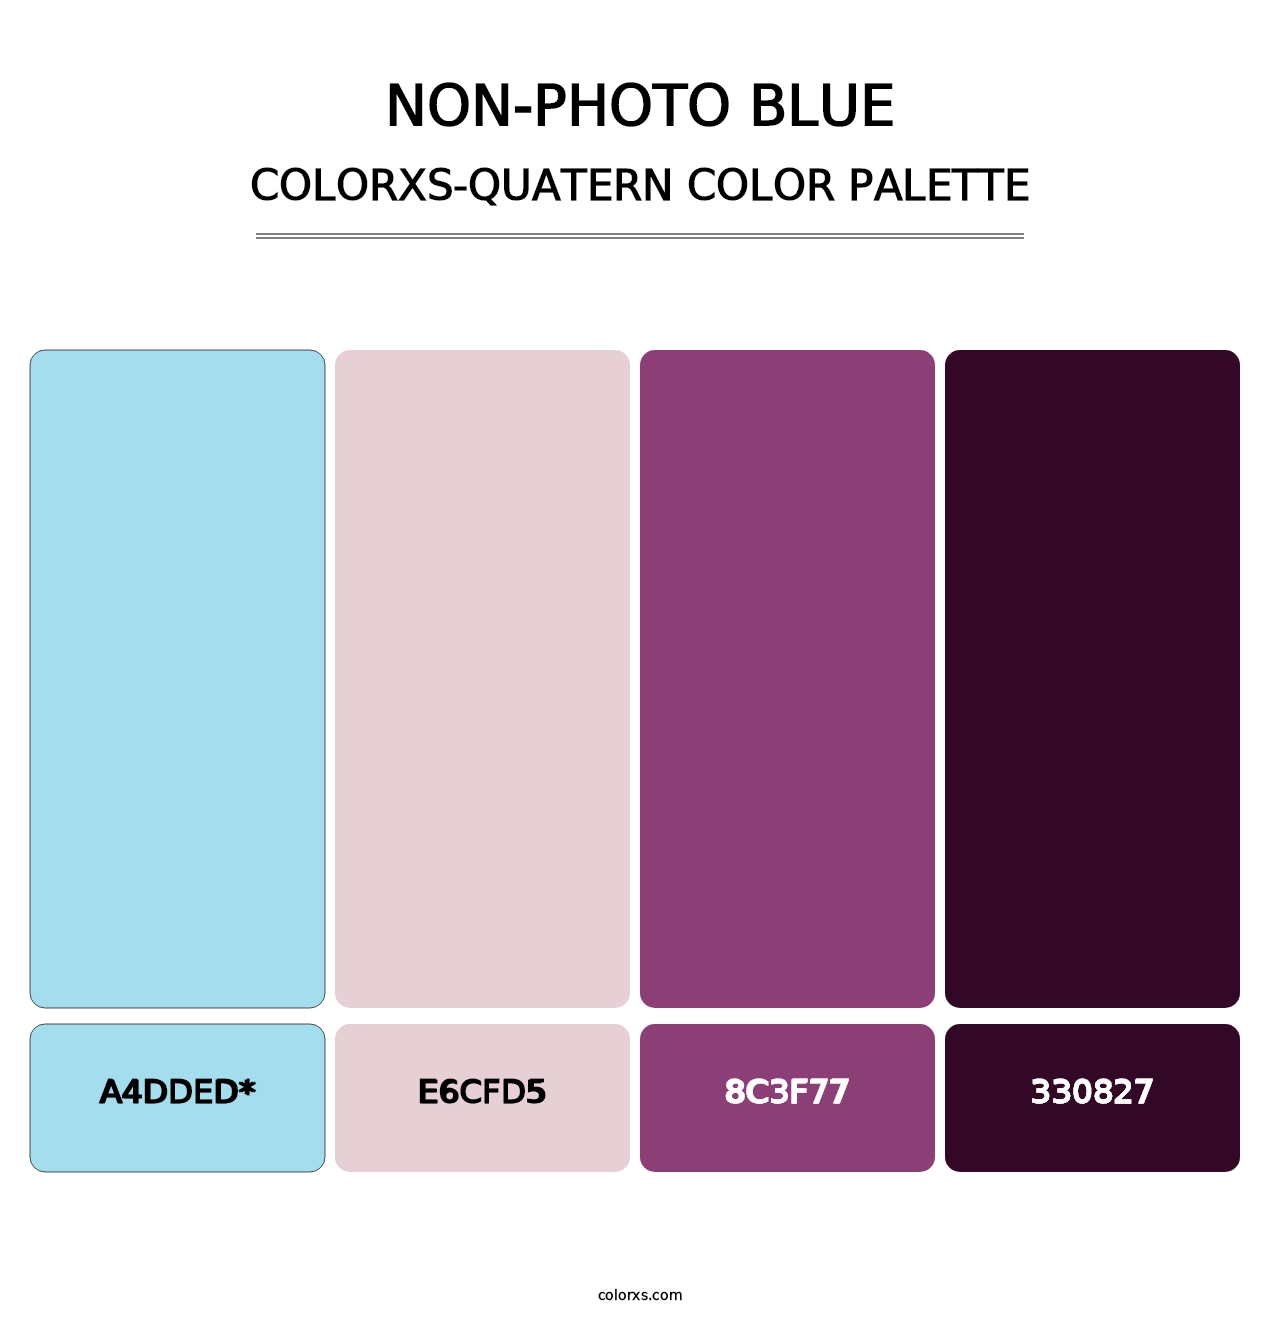 Non-photo Blue - Colorxs Quatern Palette